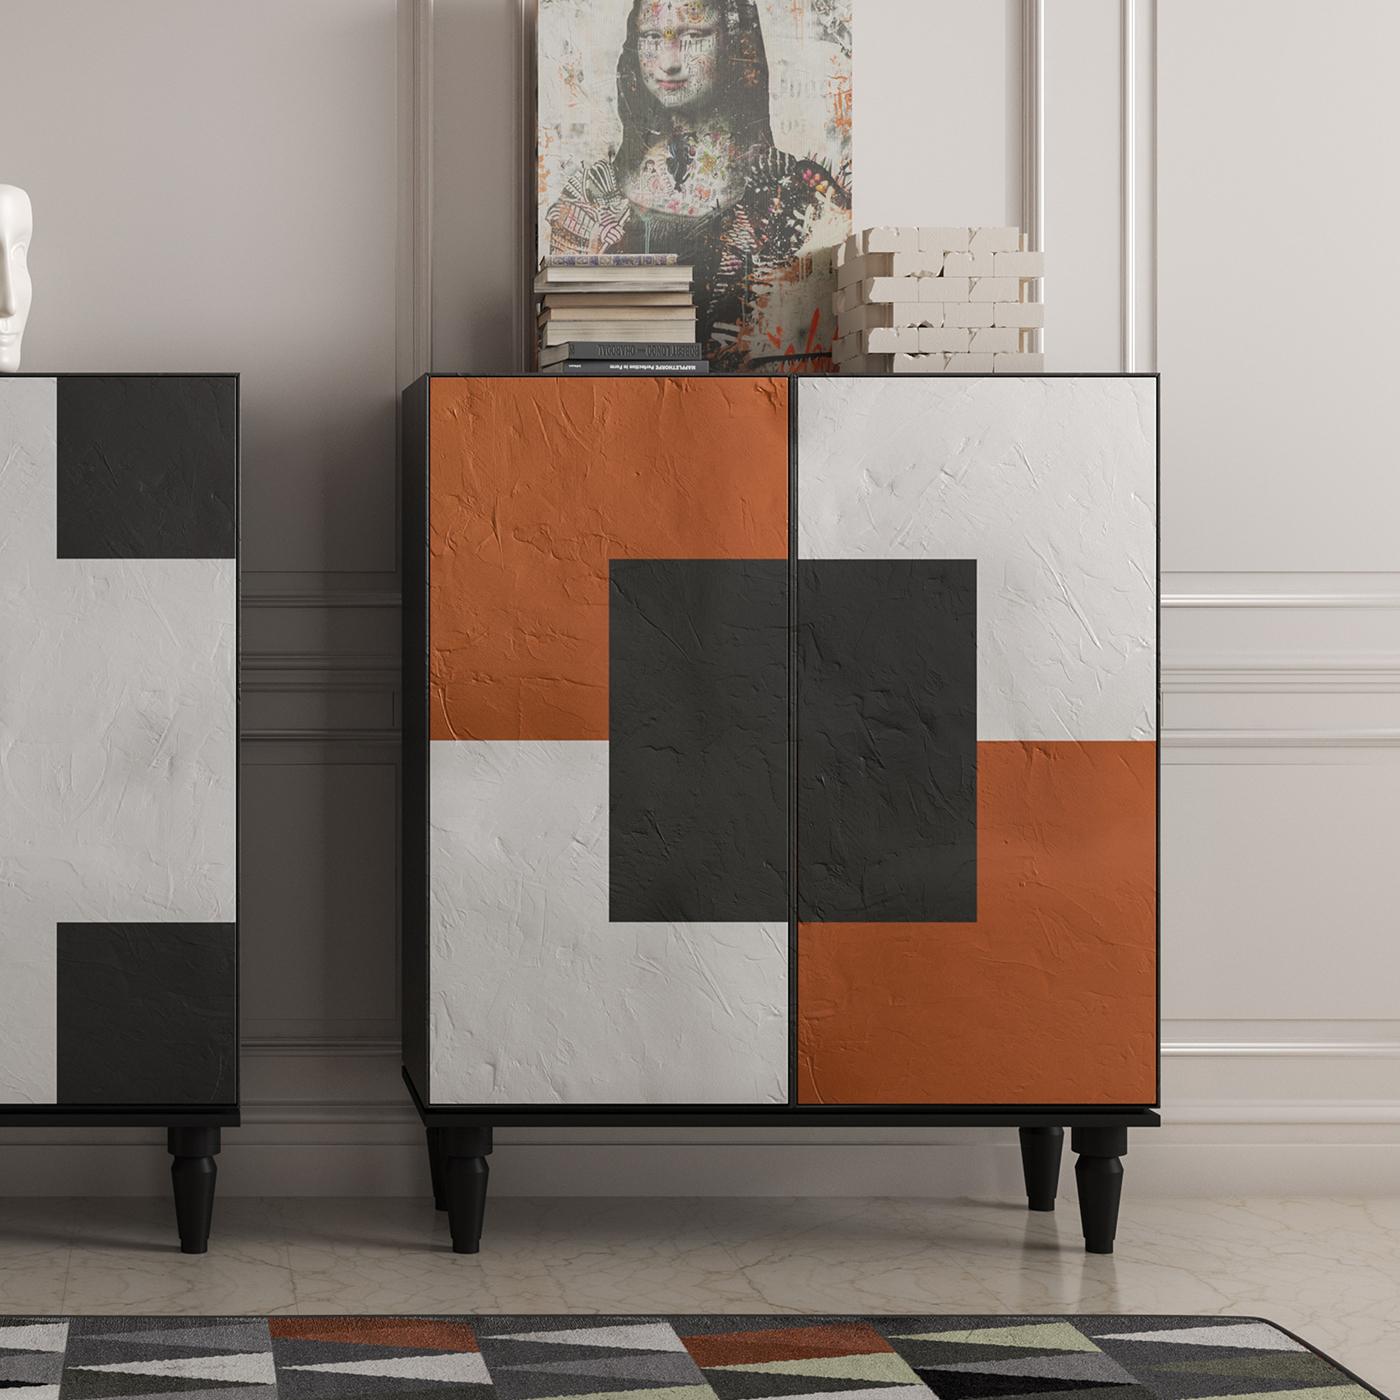 Dieser wunderbare Schrank ist Teil einer Serie von modularen Elementen, die einen modernen Raum auszeichnen und einen einzigartigen Farbtupfer sowie vielseitigen Stauraum bieten. Das vollständig aus MDF gefertigte Möbelstück hat eine matt lackierte